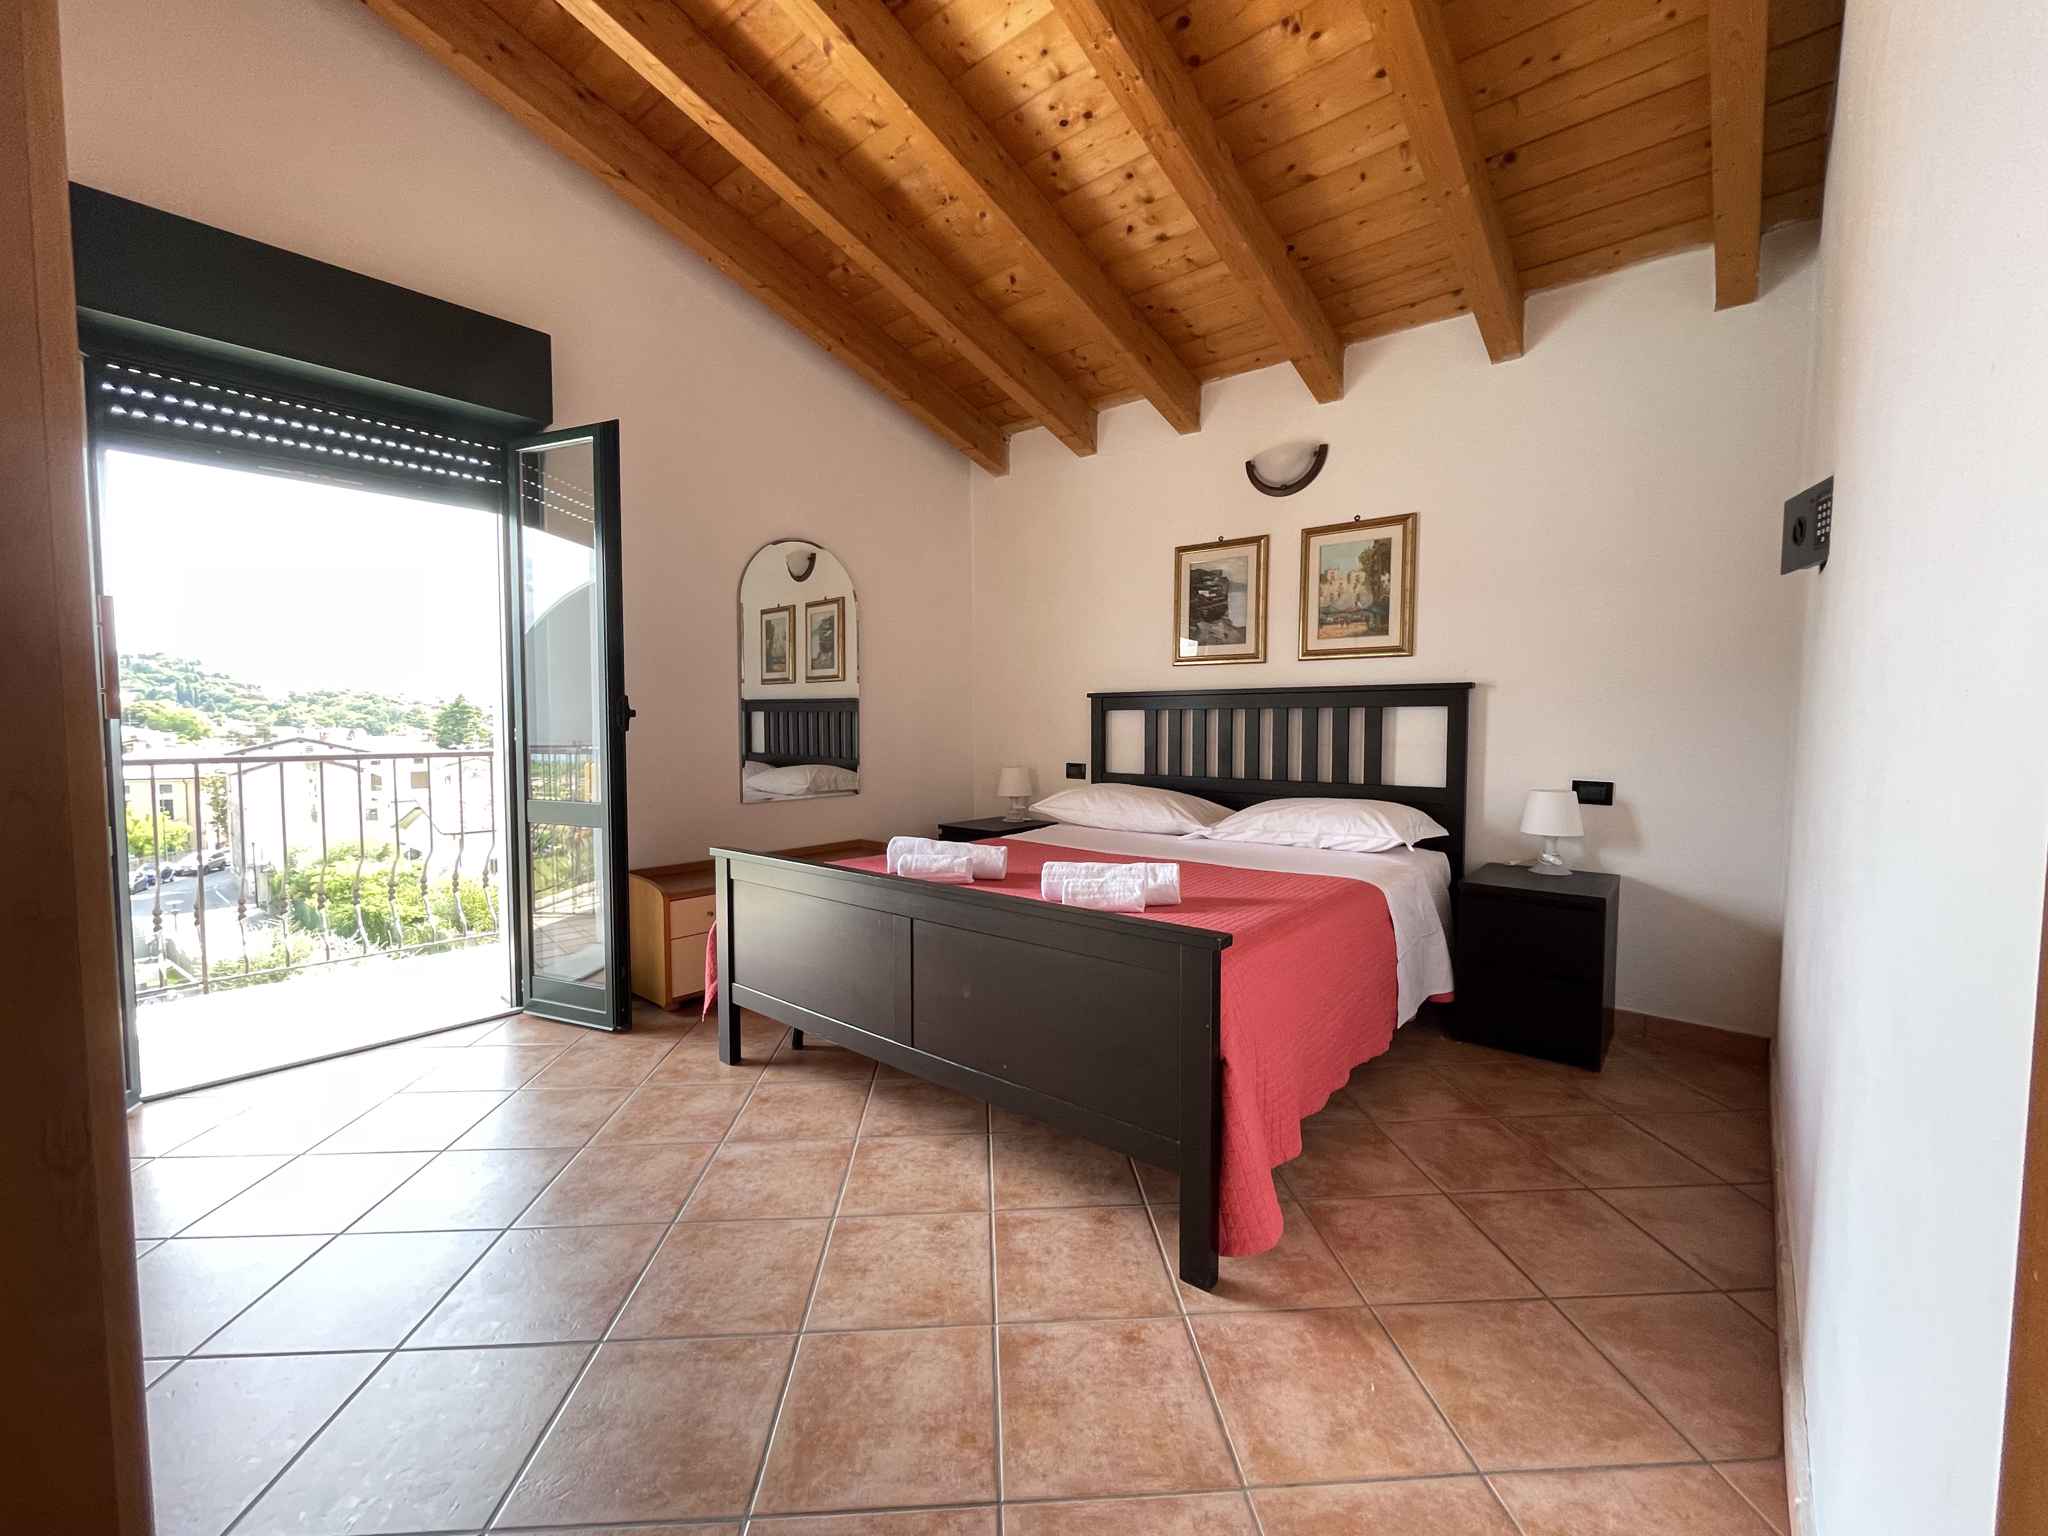 Ferienwohnung in der Residence Bellavista mit Pool   Lombardei